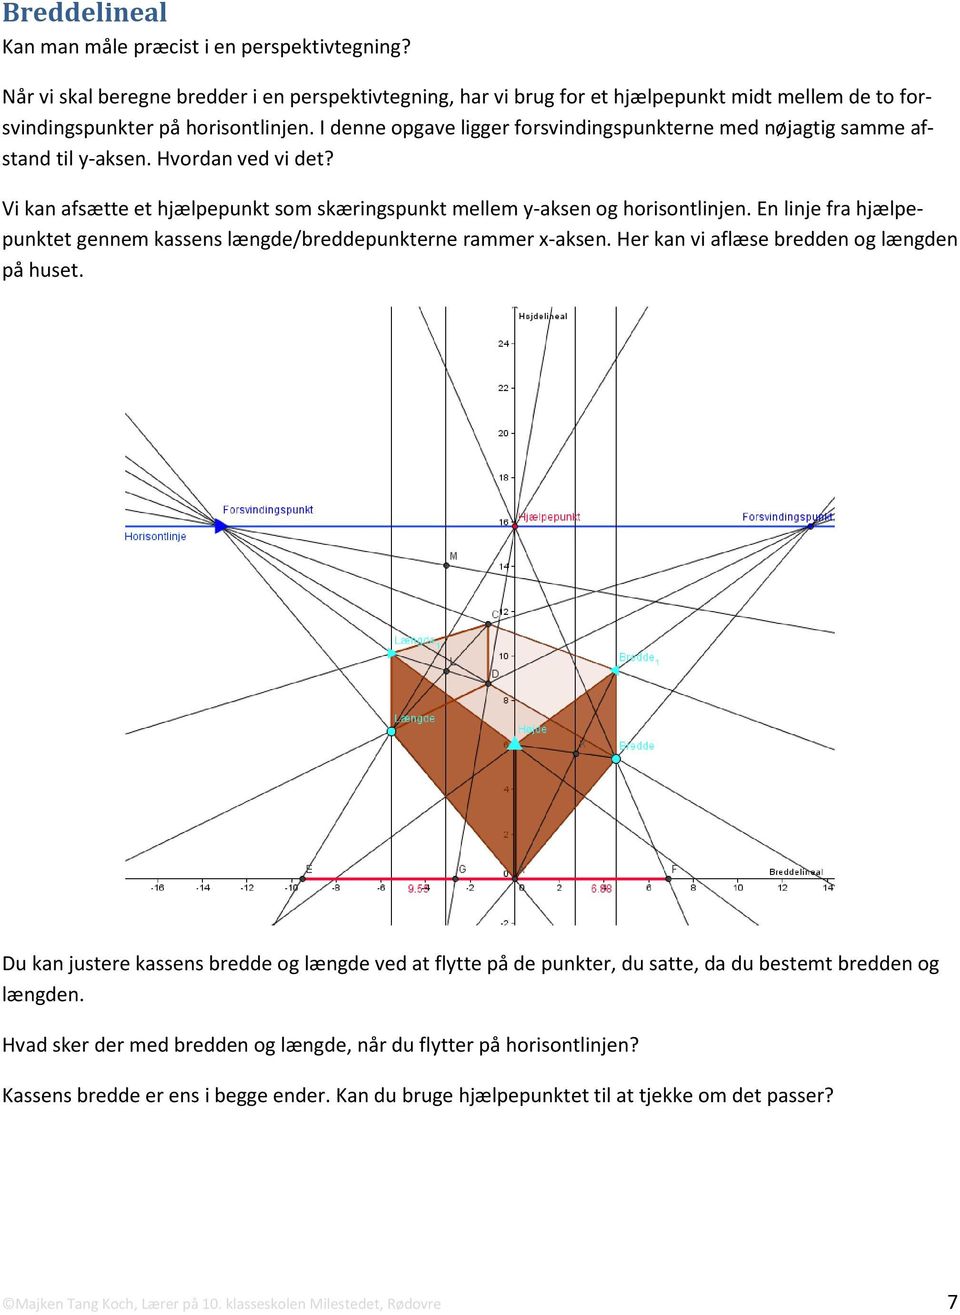 En linje fra hjælpepunktet gennem kassens længde/breddepunkterne rammer x-aksen. Her kan vi aflæse bredden og længden på huset.